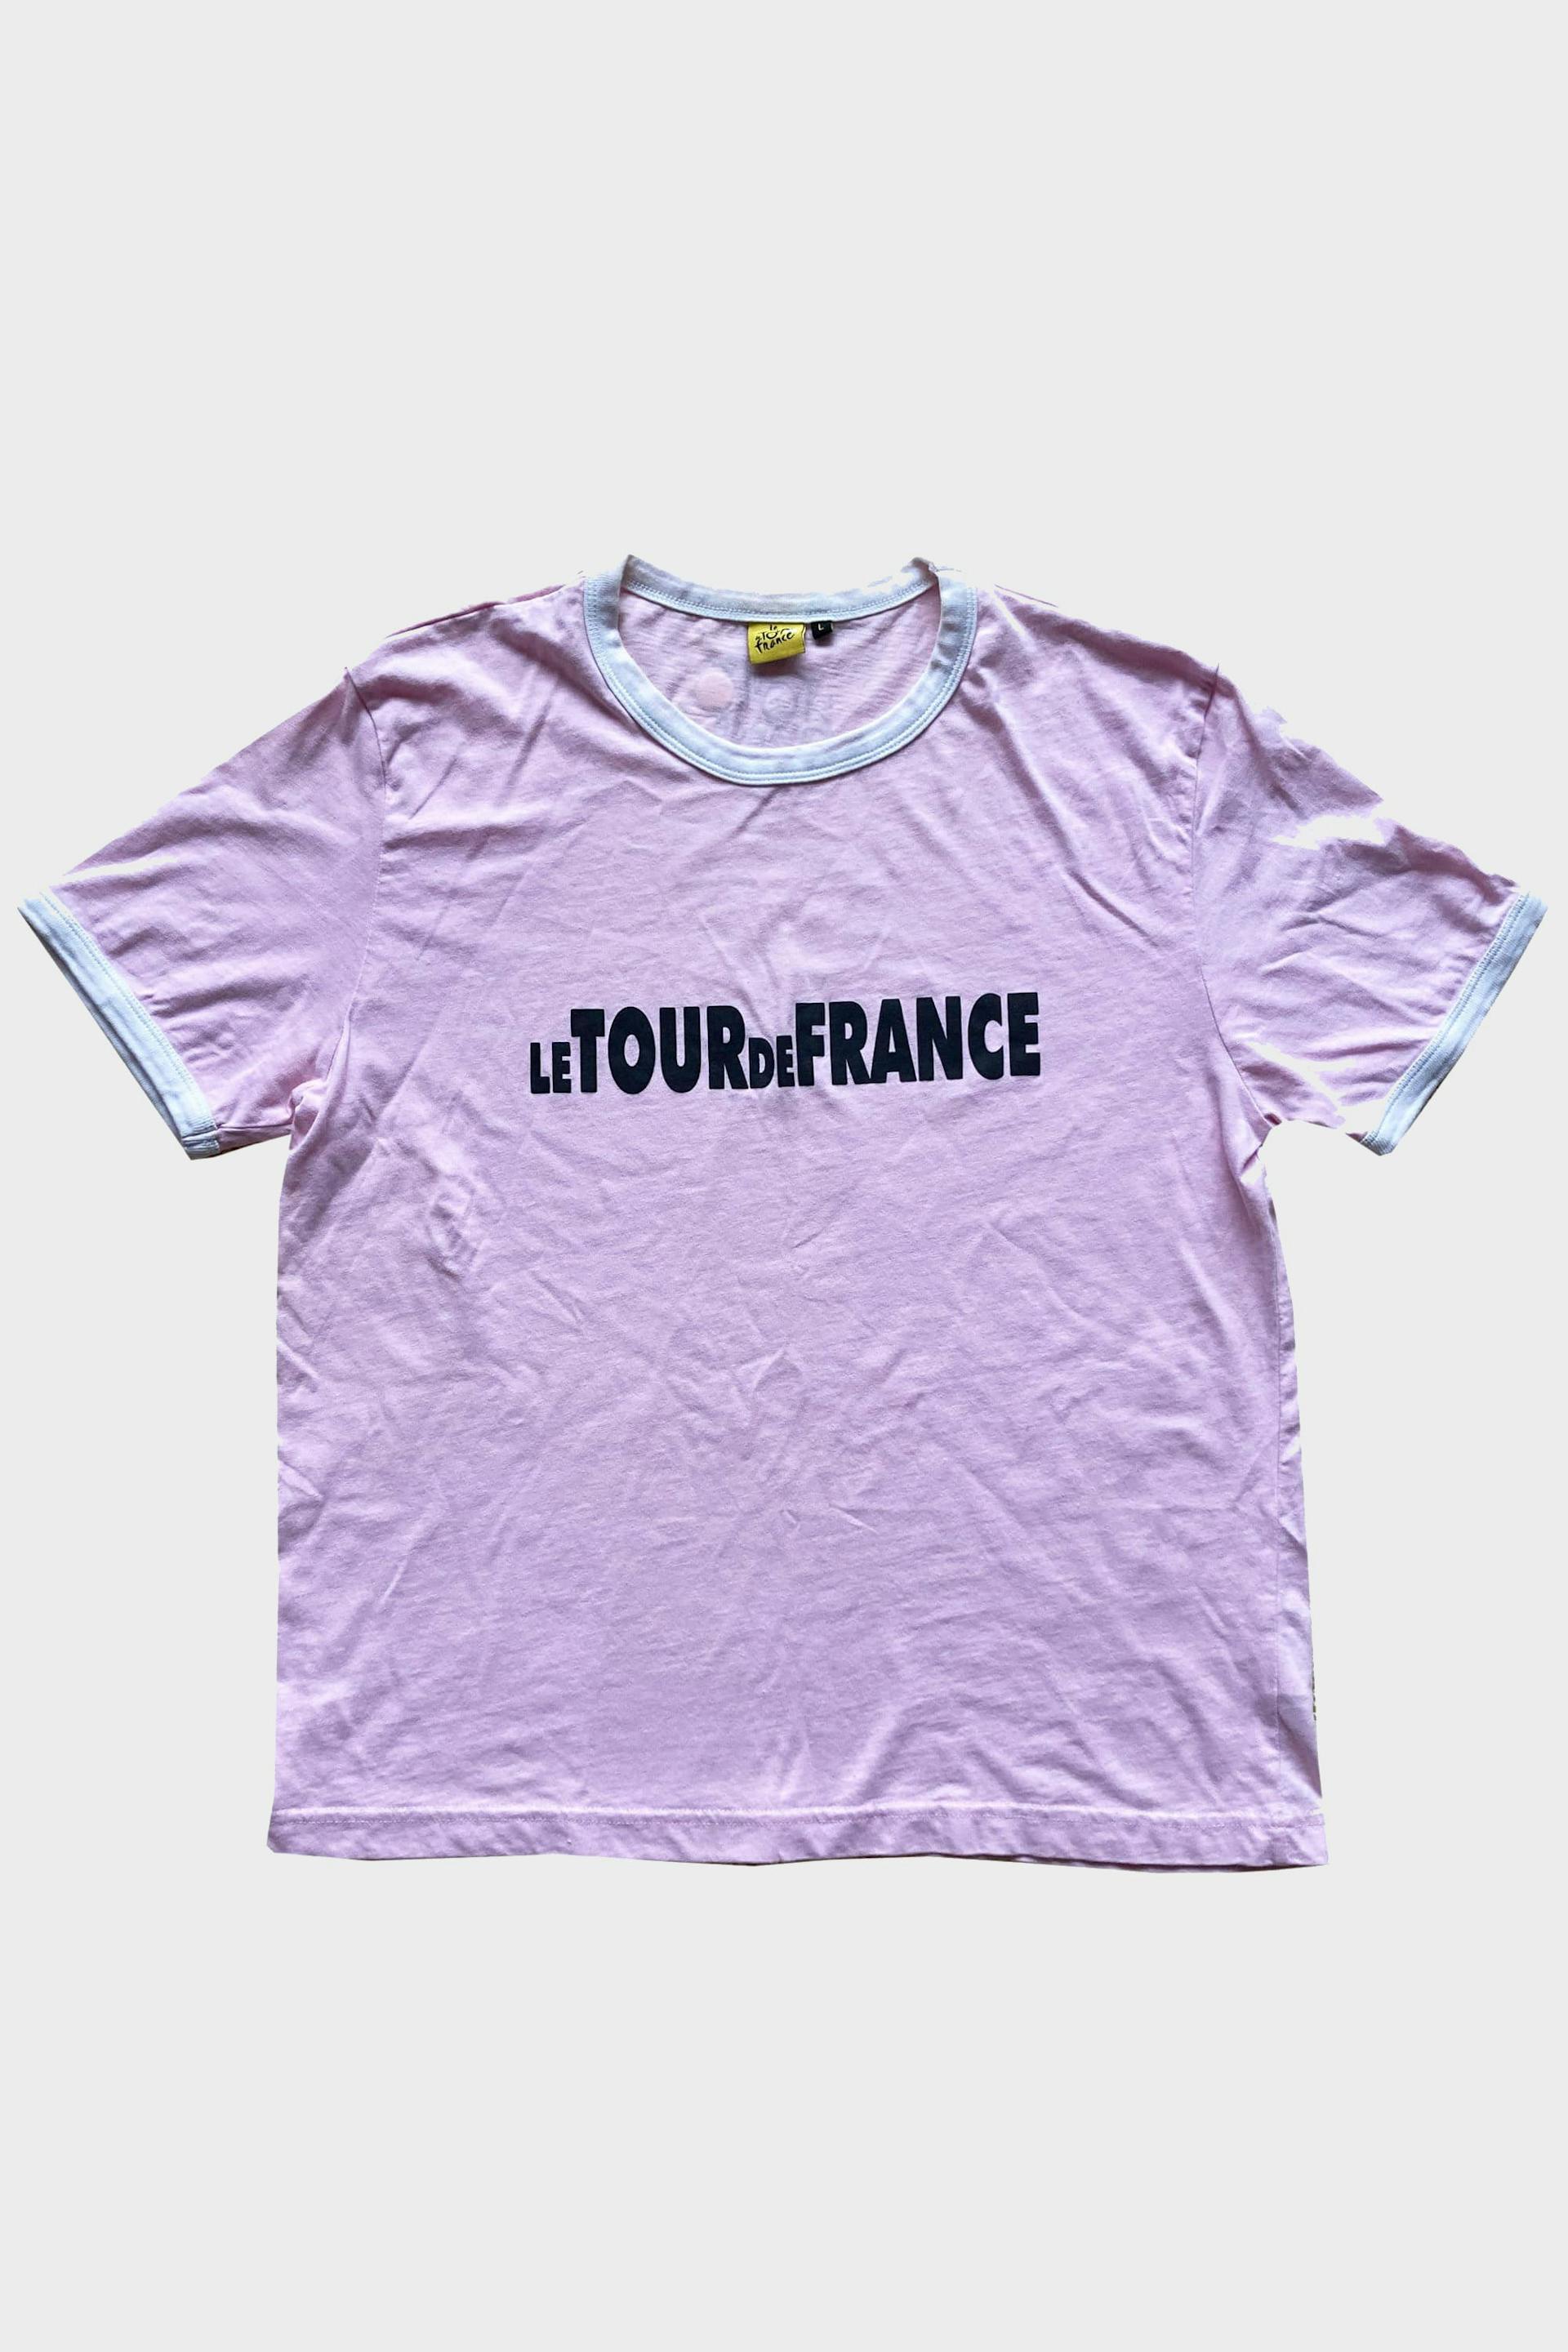 Le Tour de France T-Shirt Pink